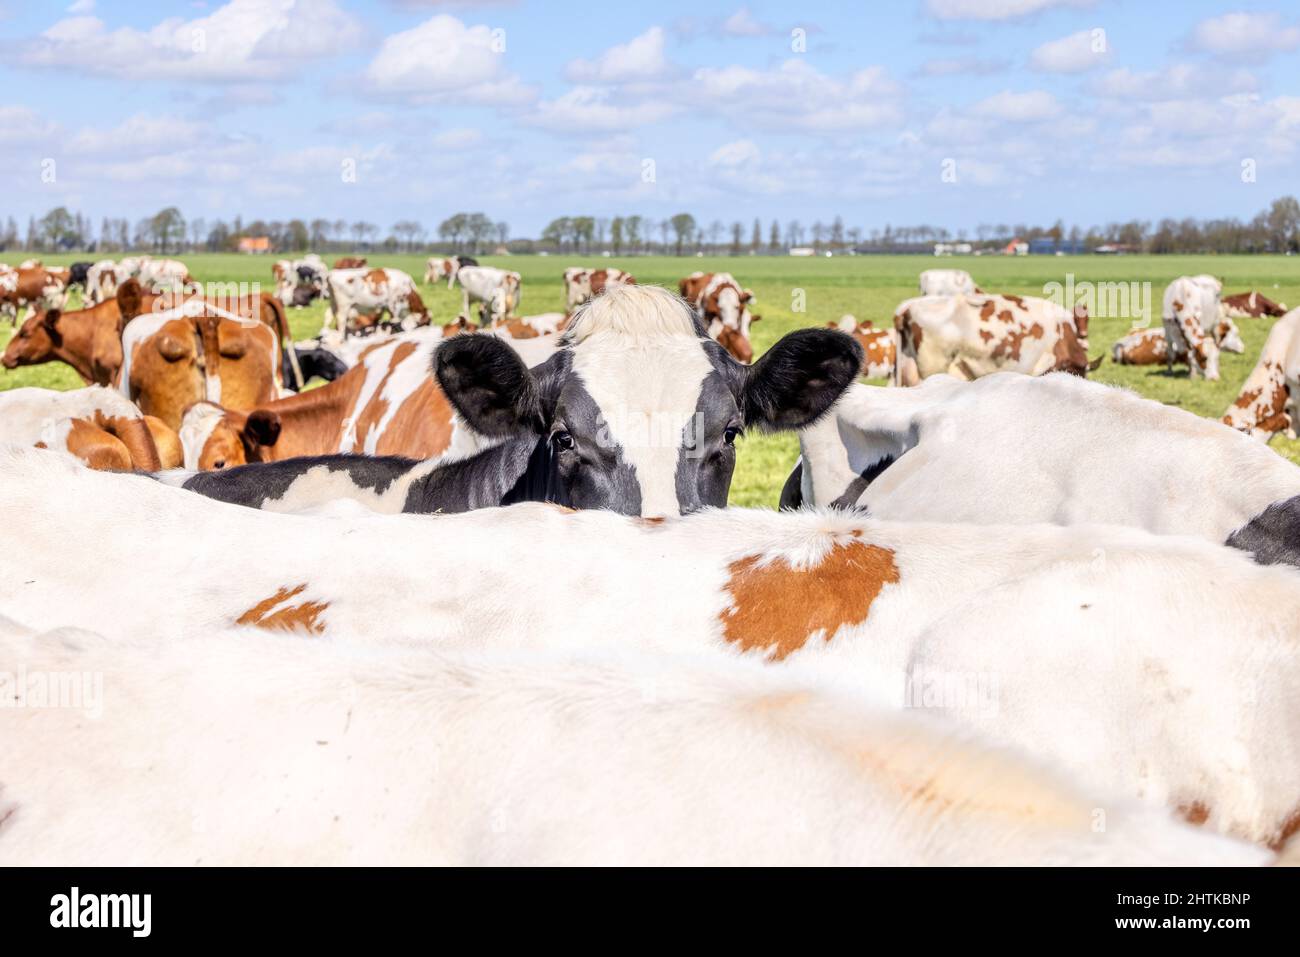 Nariz de vaca mirando sobre la parte posterior de otra vaca, vacas blancas y negras, rebaño de paisaje y nubes en un cielo azul. Foto de stock